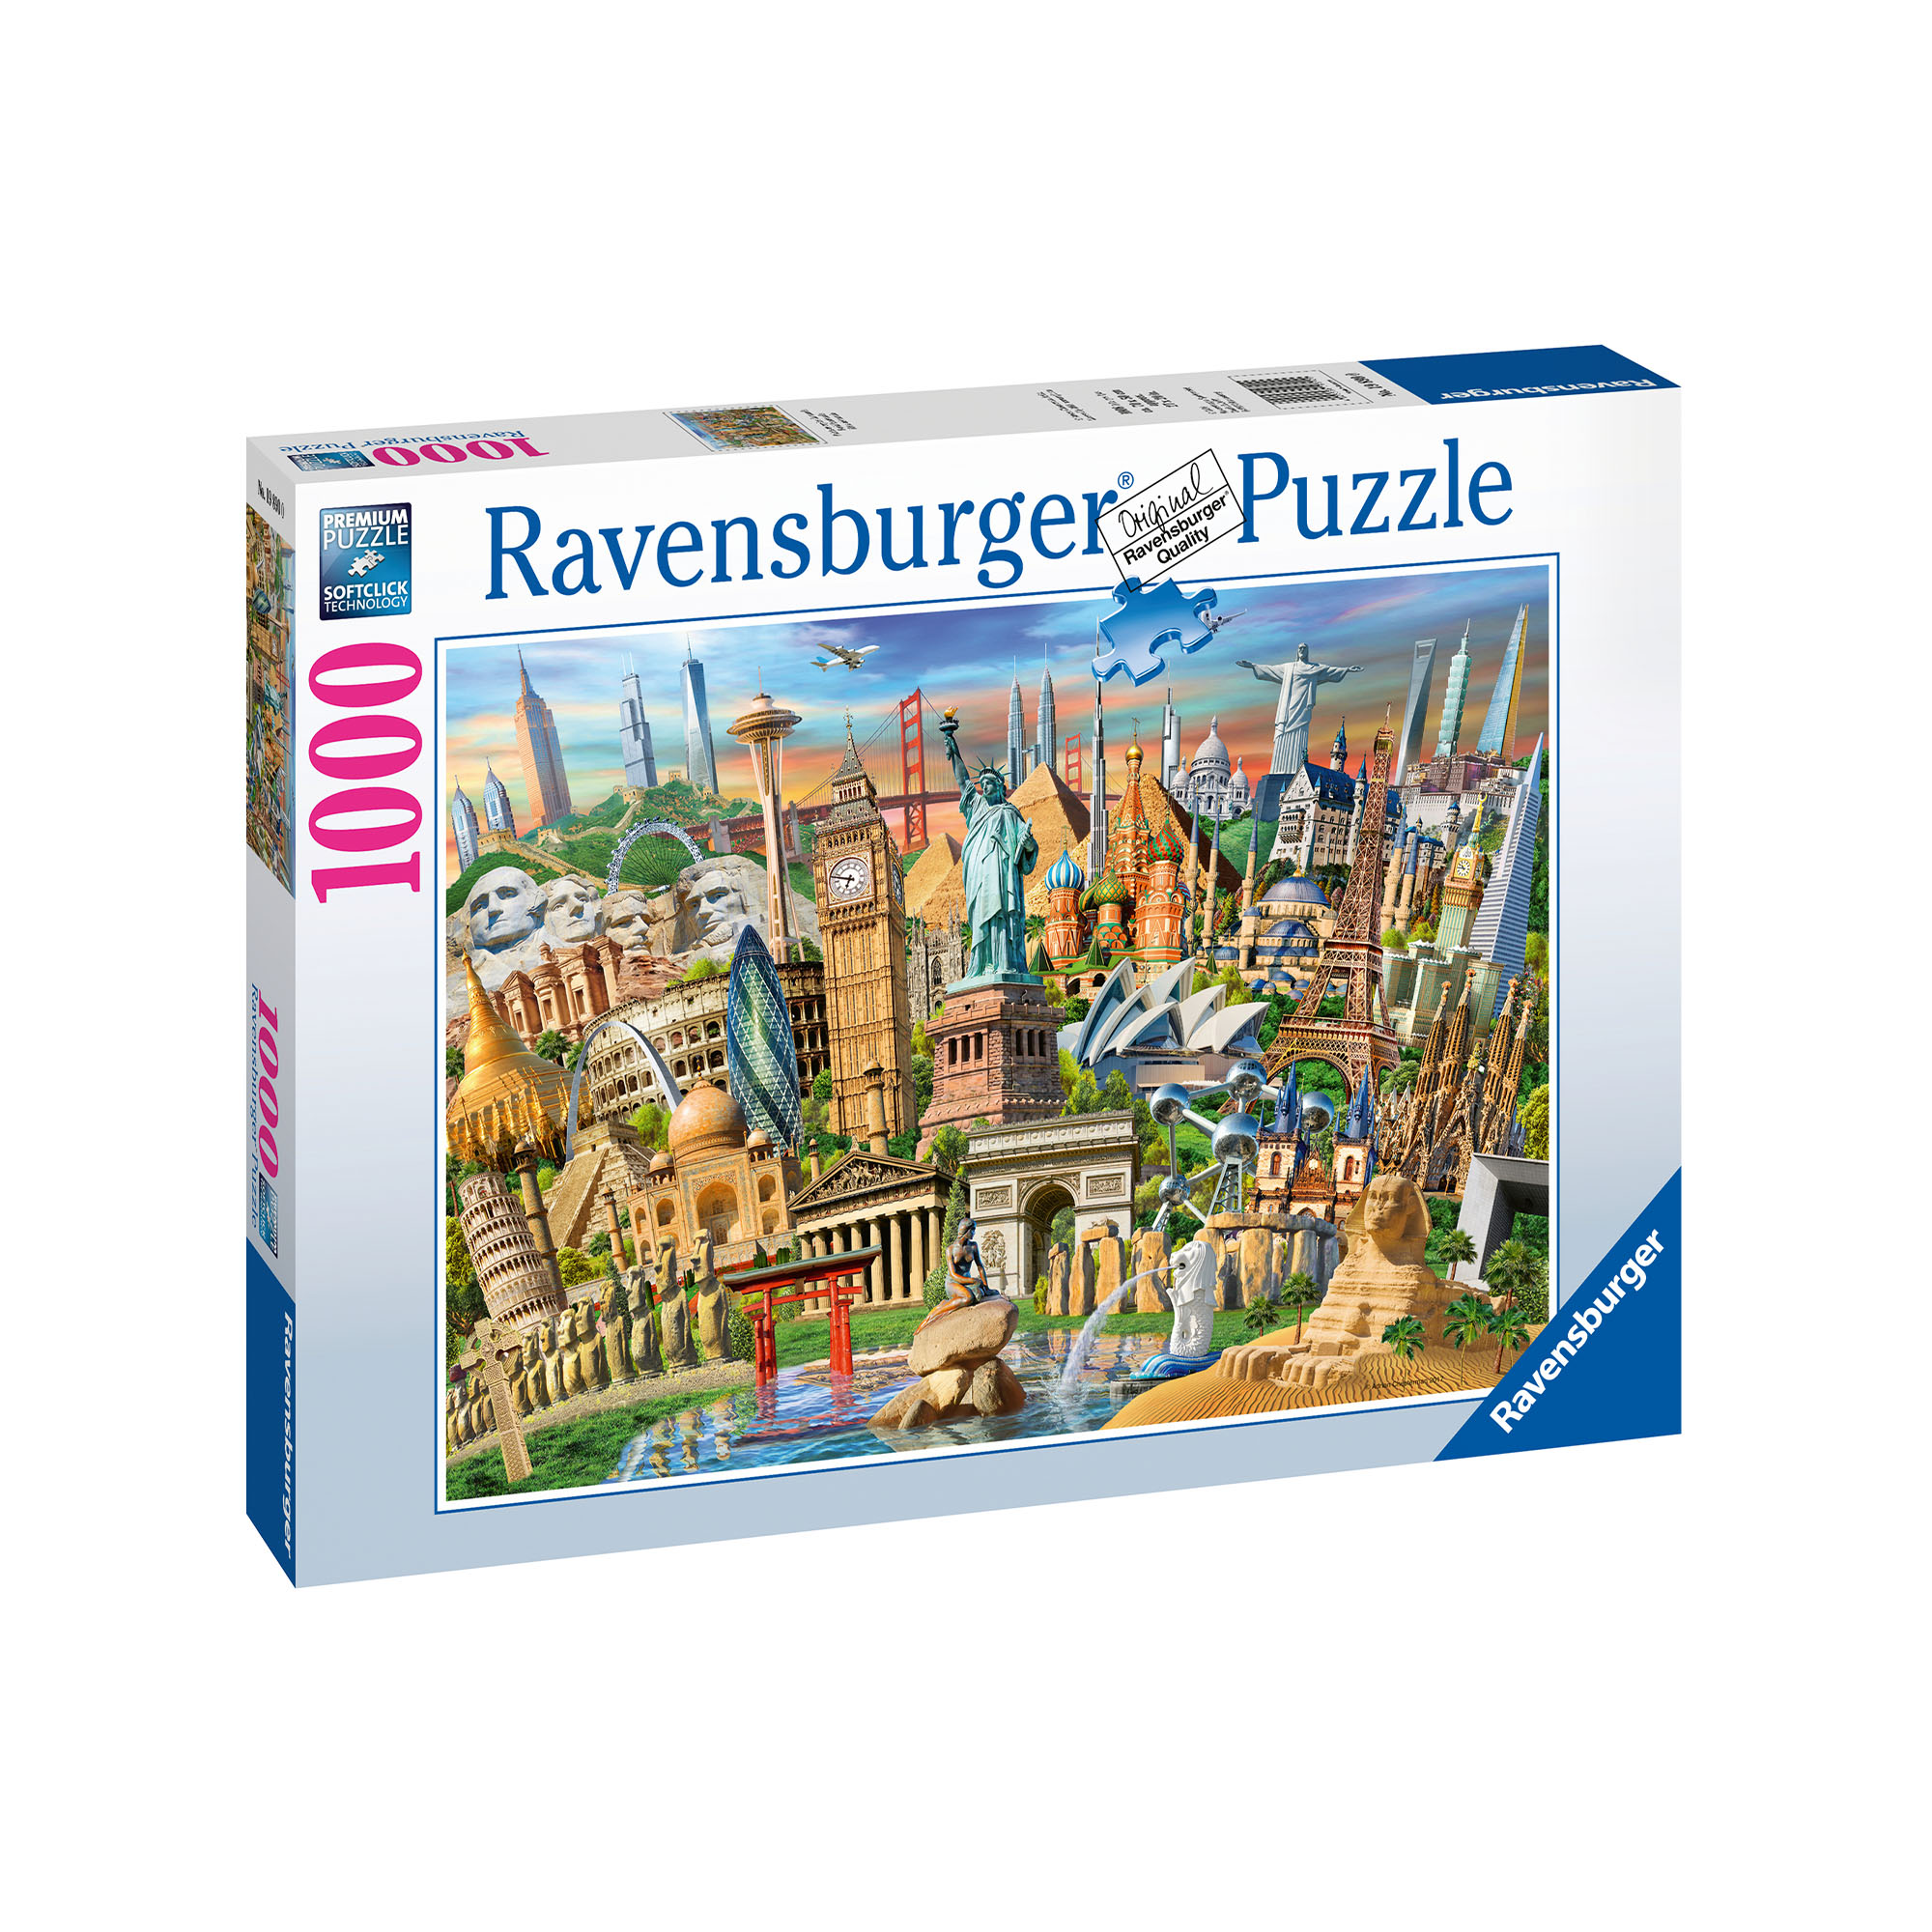 Ravensburger Puzzle 1000 pezzi 19890 - World Landmarks, , large